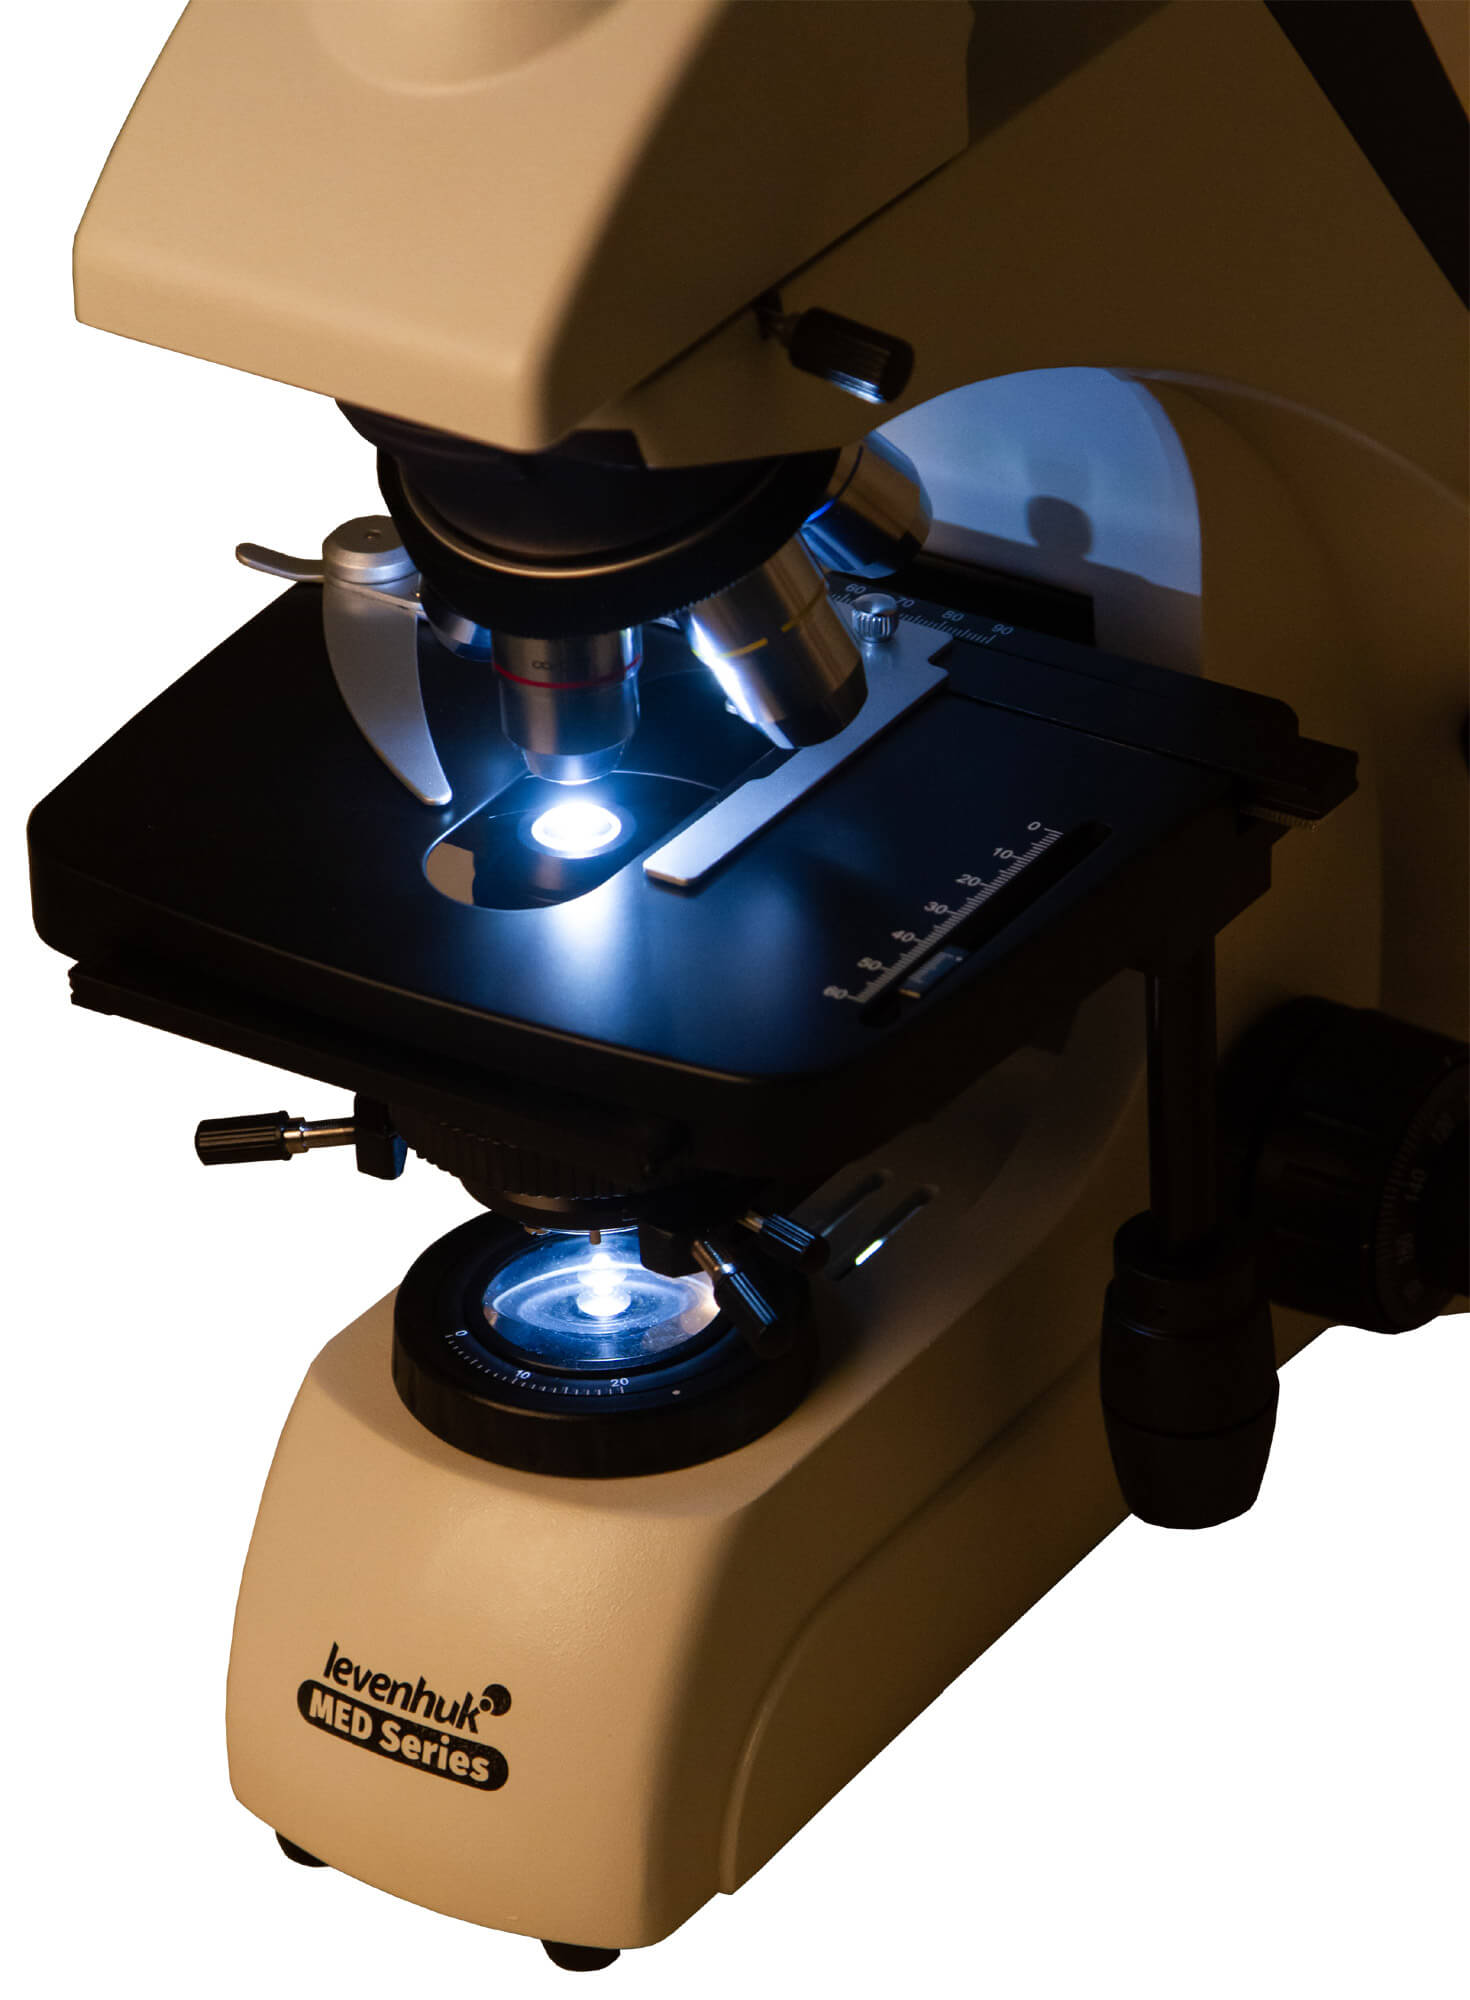  Trinokulárny mikroskop Levenhuk MED 30T